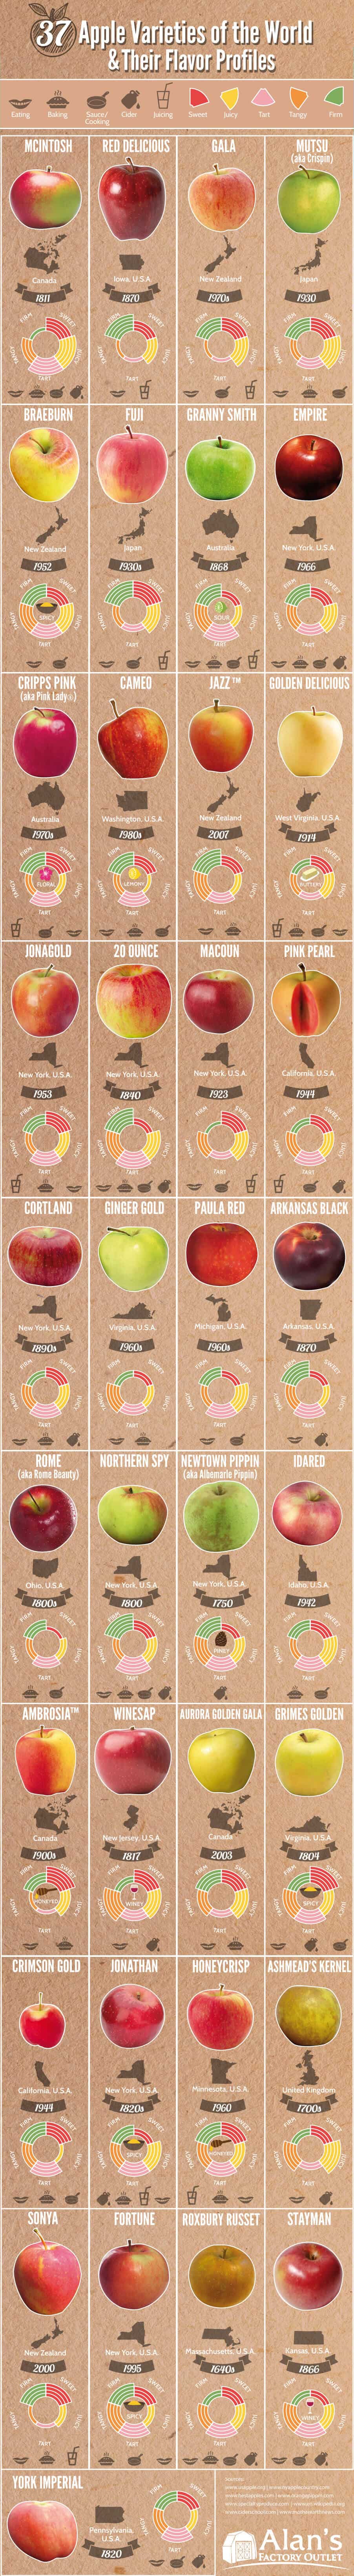 37-apple-varieites-around-the-world.jpg